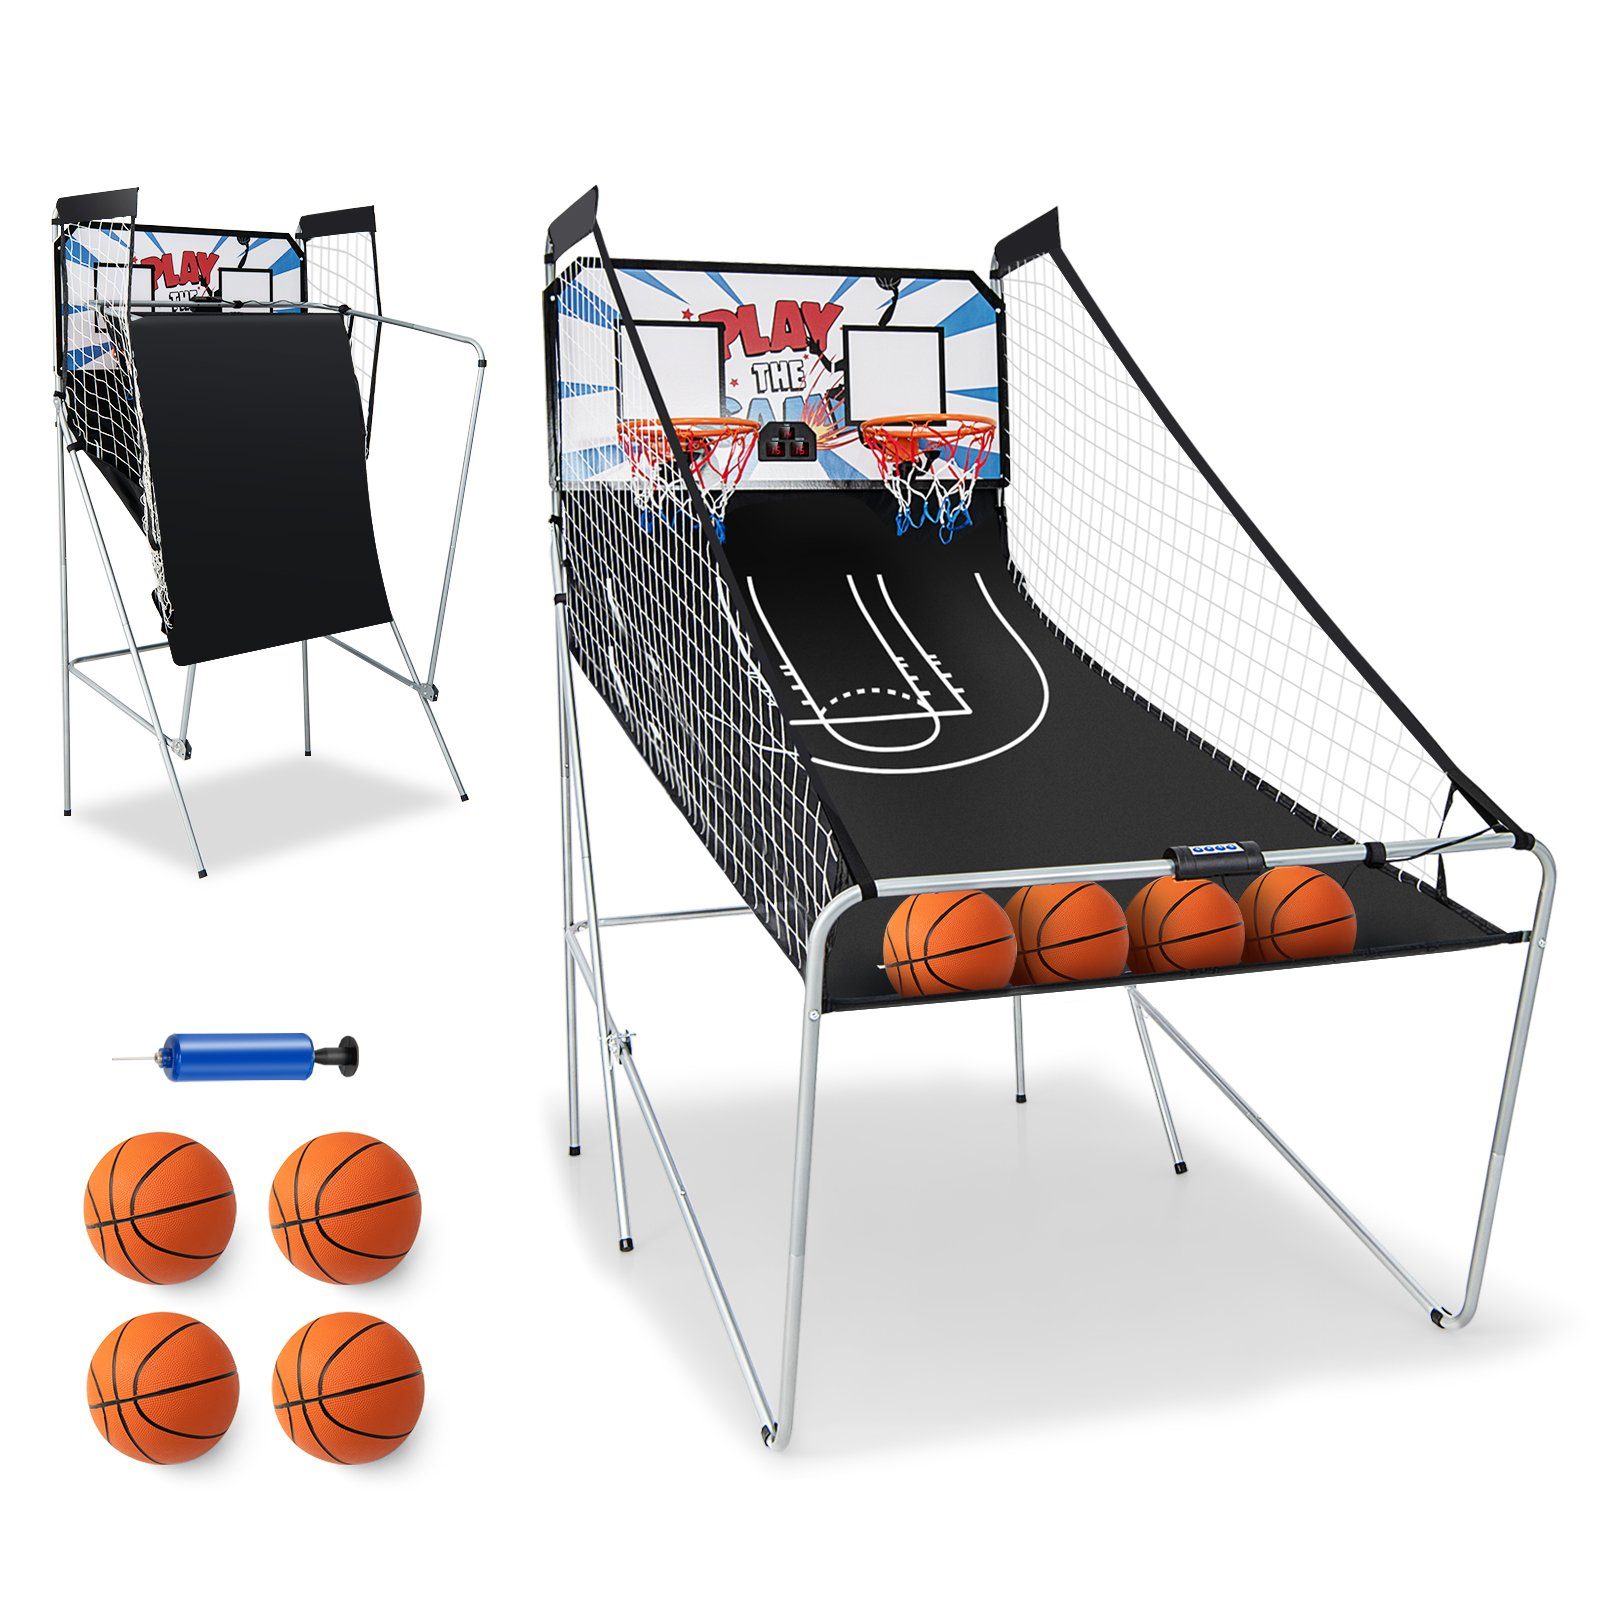 Bällen, 4 COSTWAY klappbar Basketballkorb inkl. Arcade-Basketballspiel, weiß